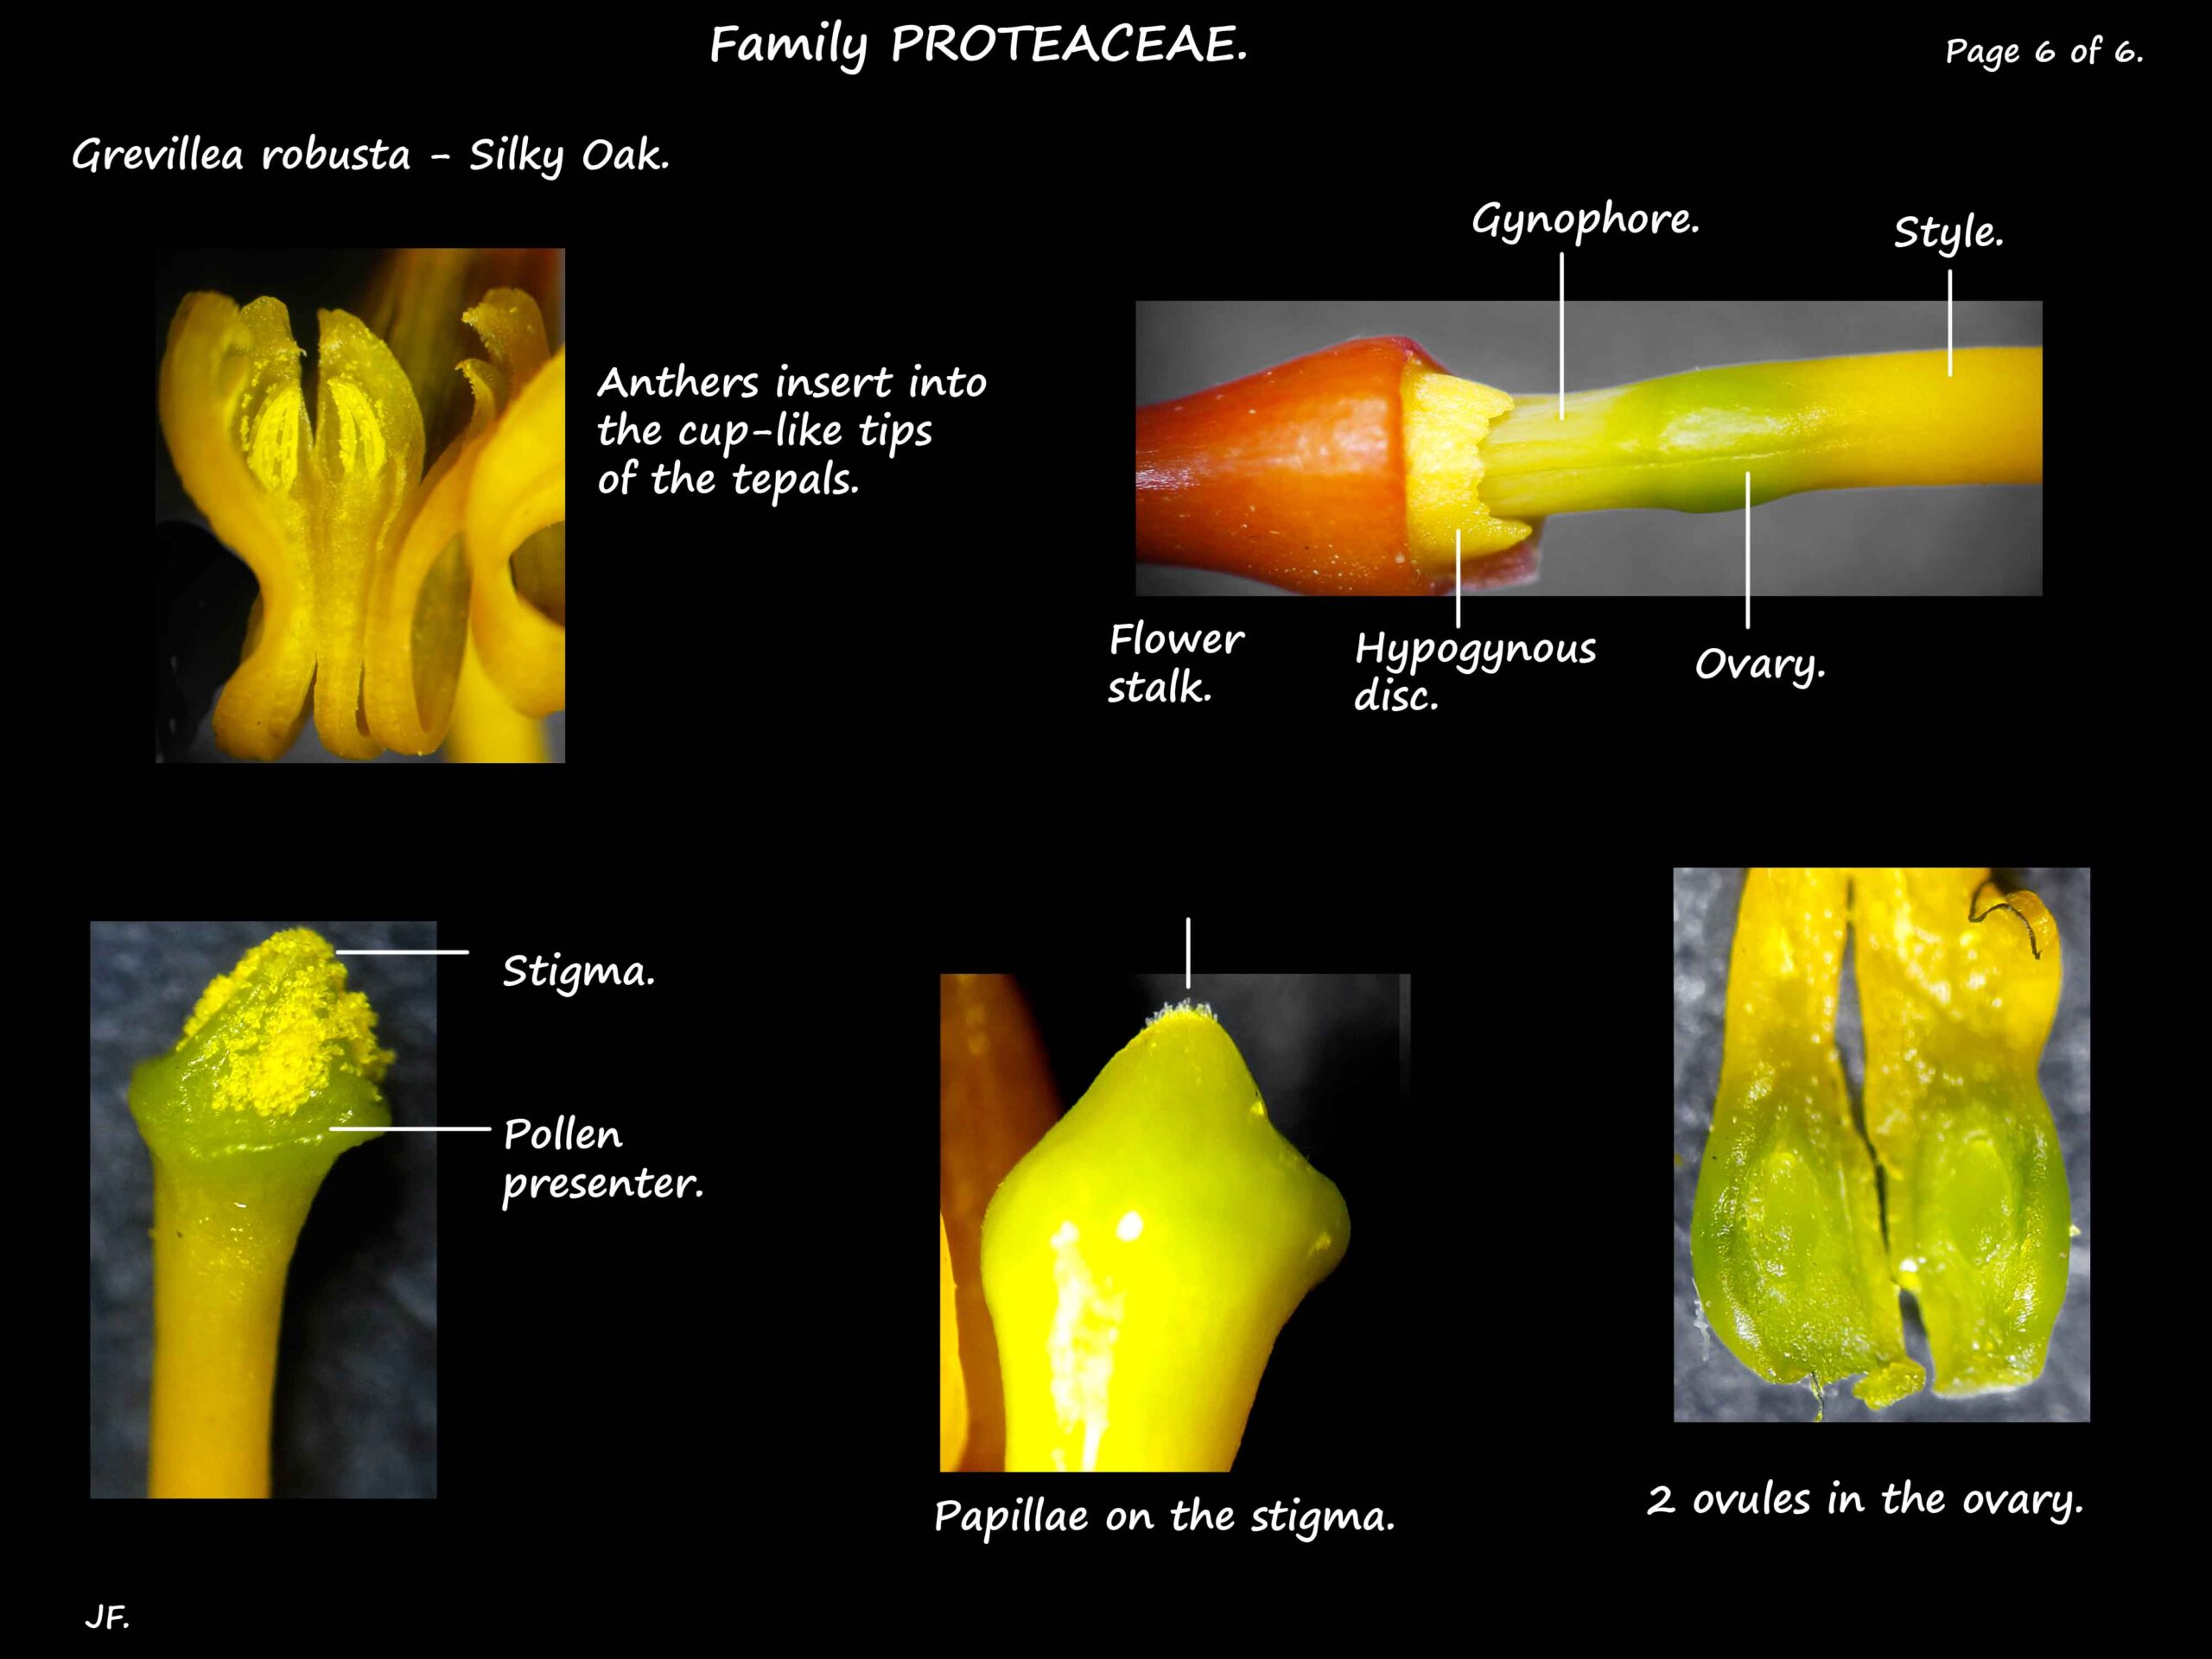 6 Grevillea robusta stamens, nectary & ovary